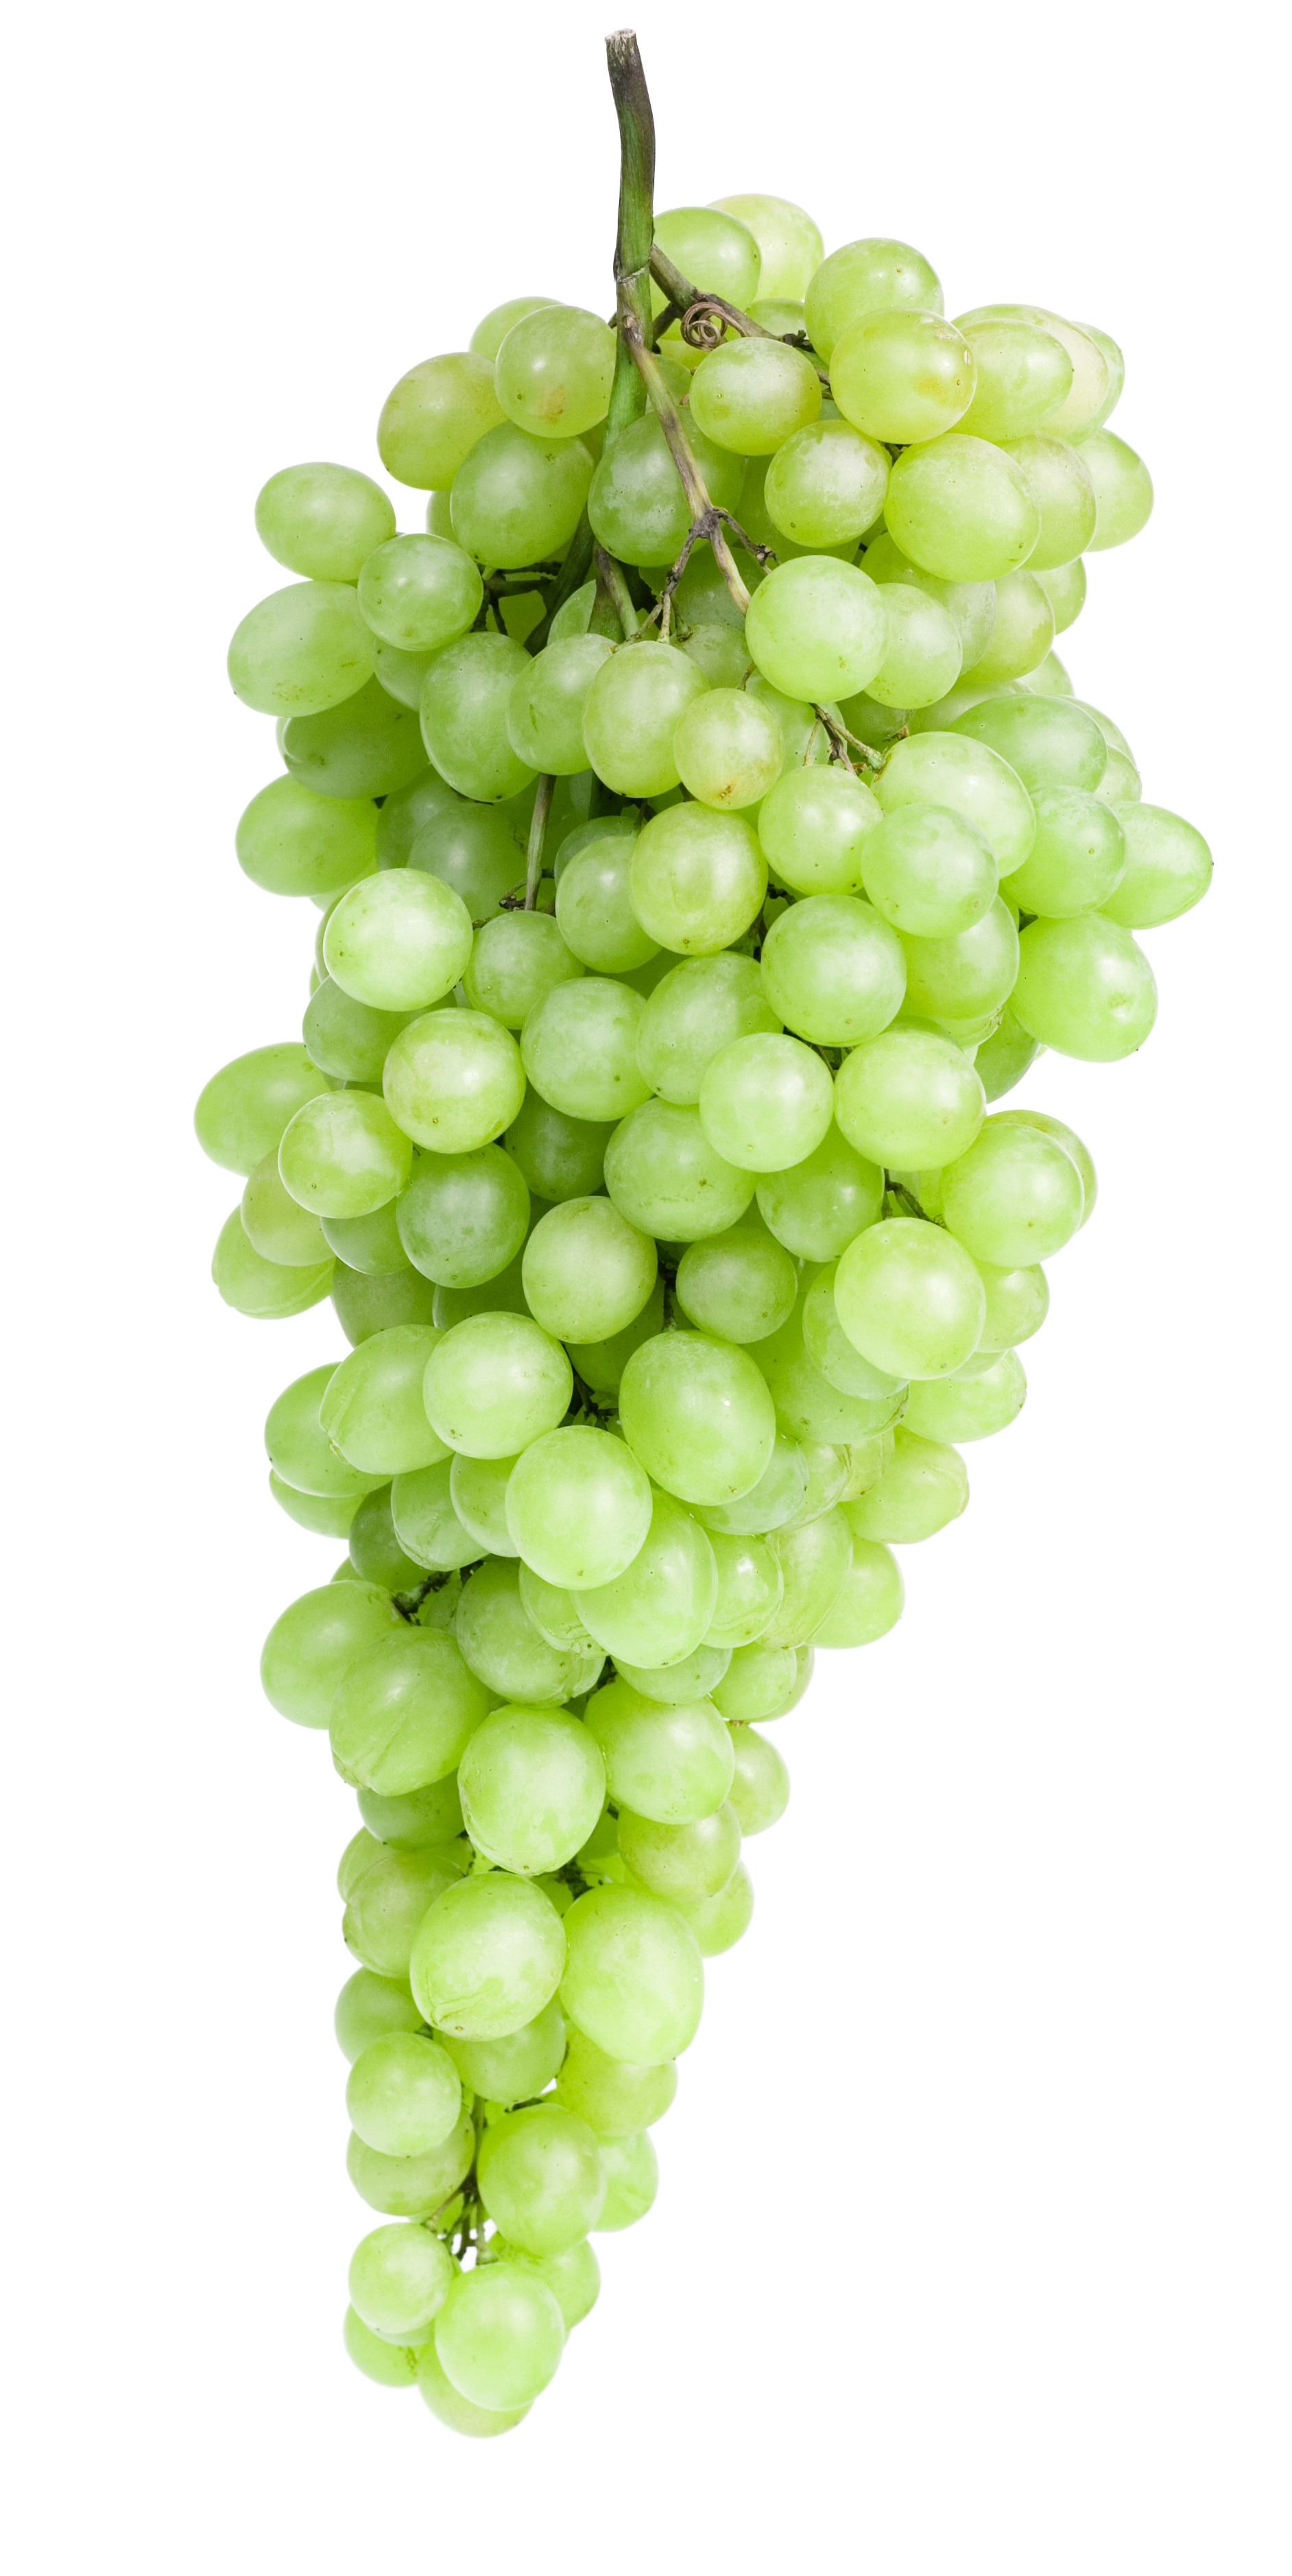 Green grapes photo